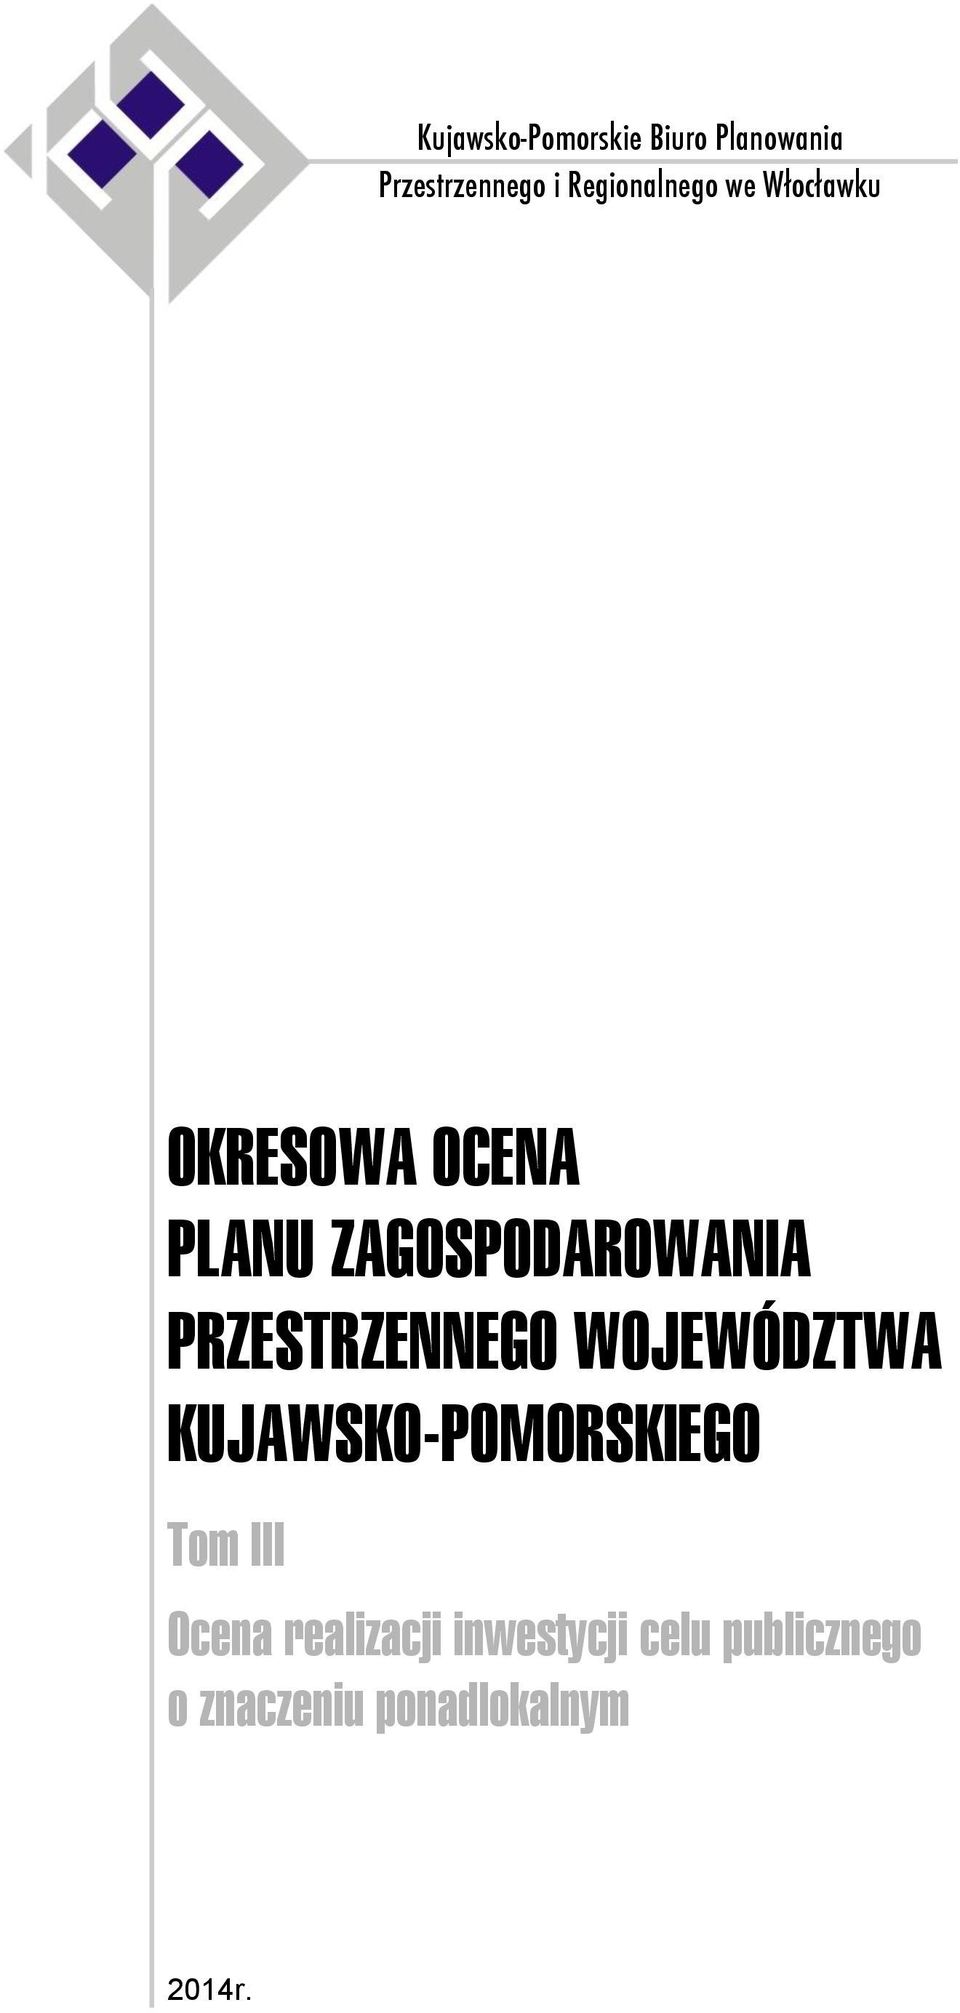 Kujawsko-Pomorskie Biuro Planowania Przestrzennego i Regionalnego we W³oc³awku